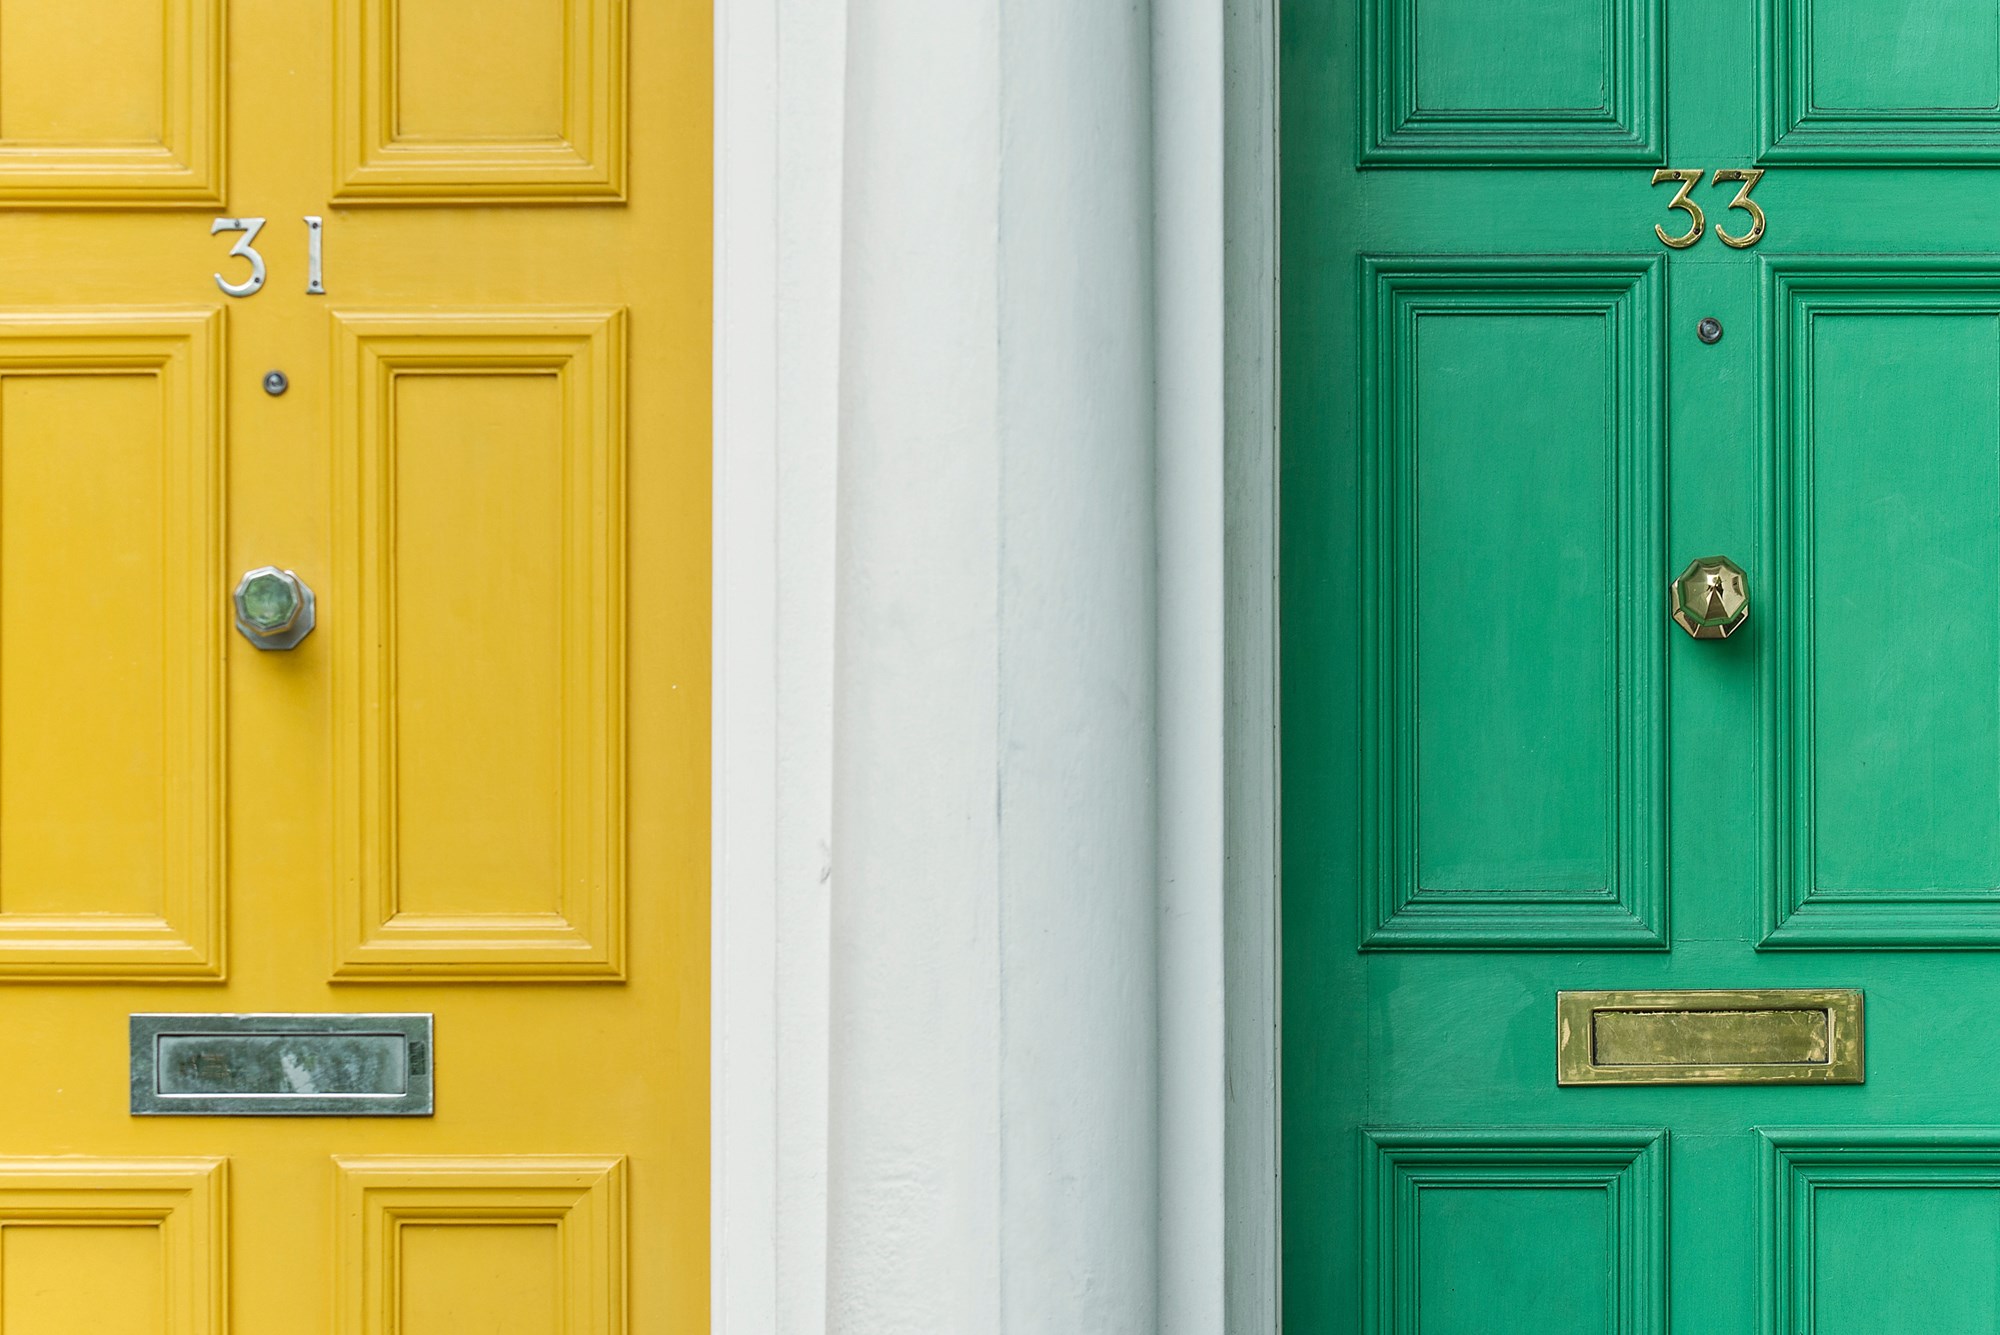 A yellow front door and a green front door